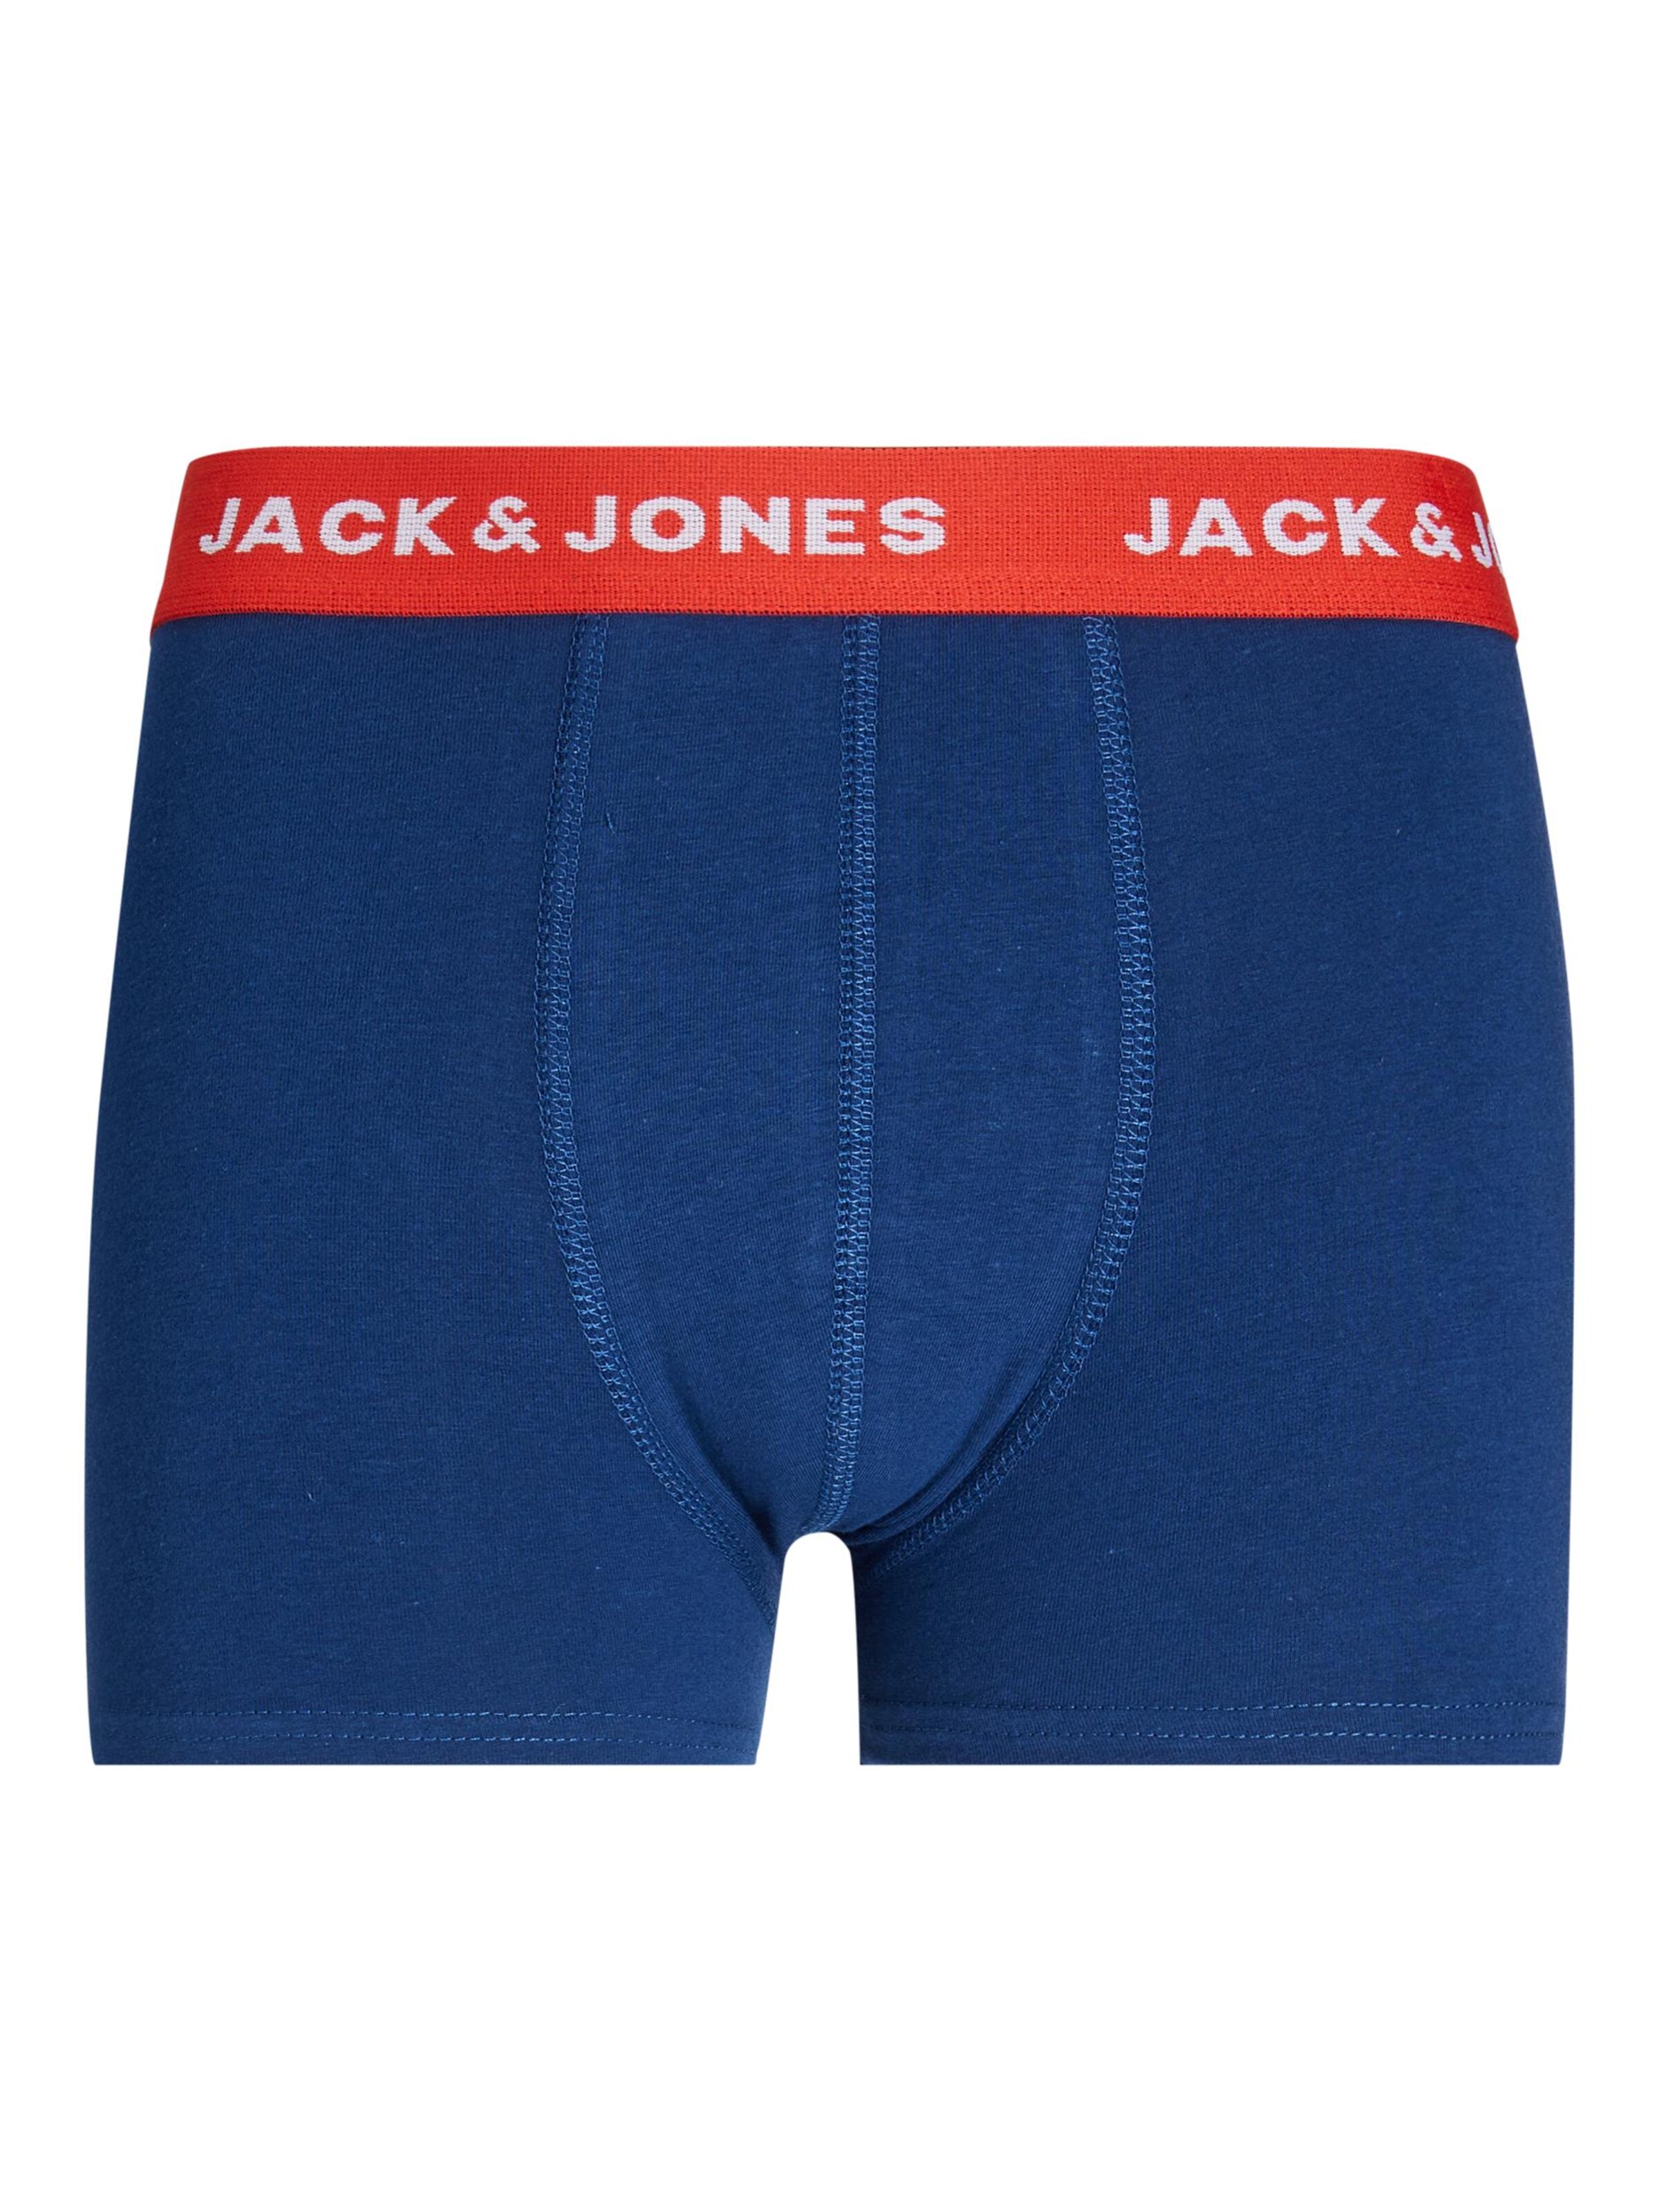 Enfants 92-140 Sous-vêtements Jack & Jones Junior en Bleu Foncé, Bleu Nuit, Noir 